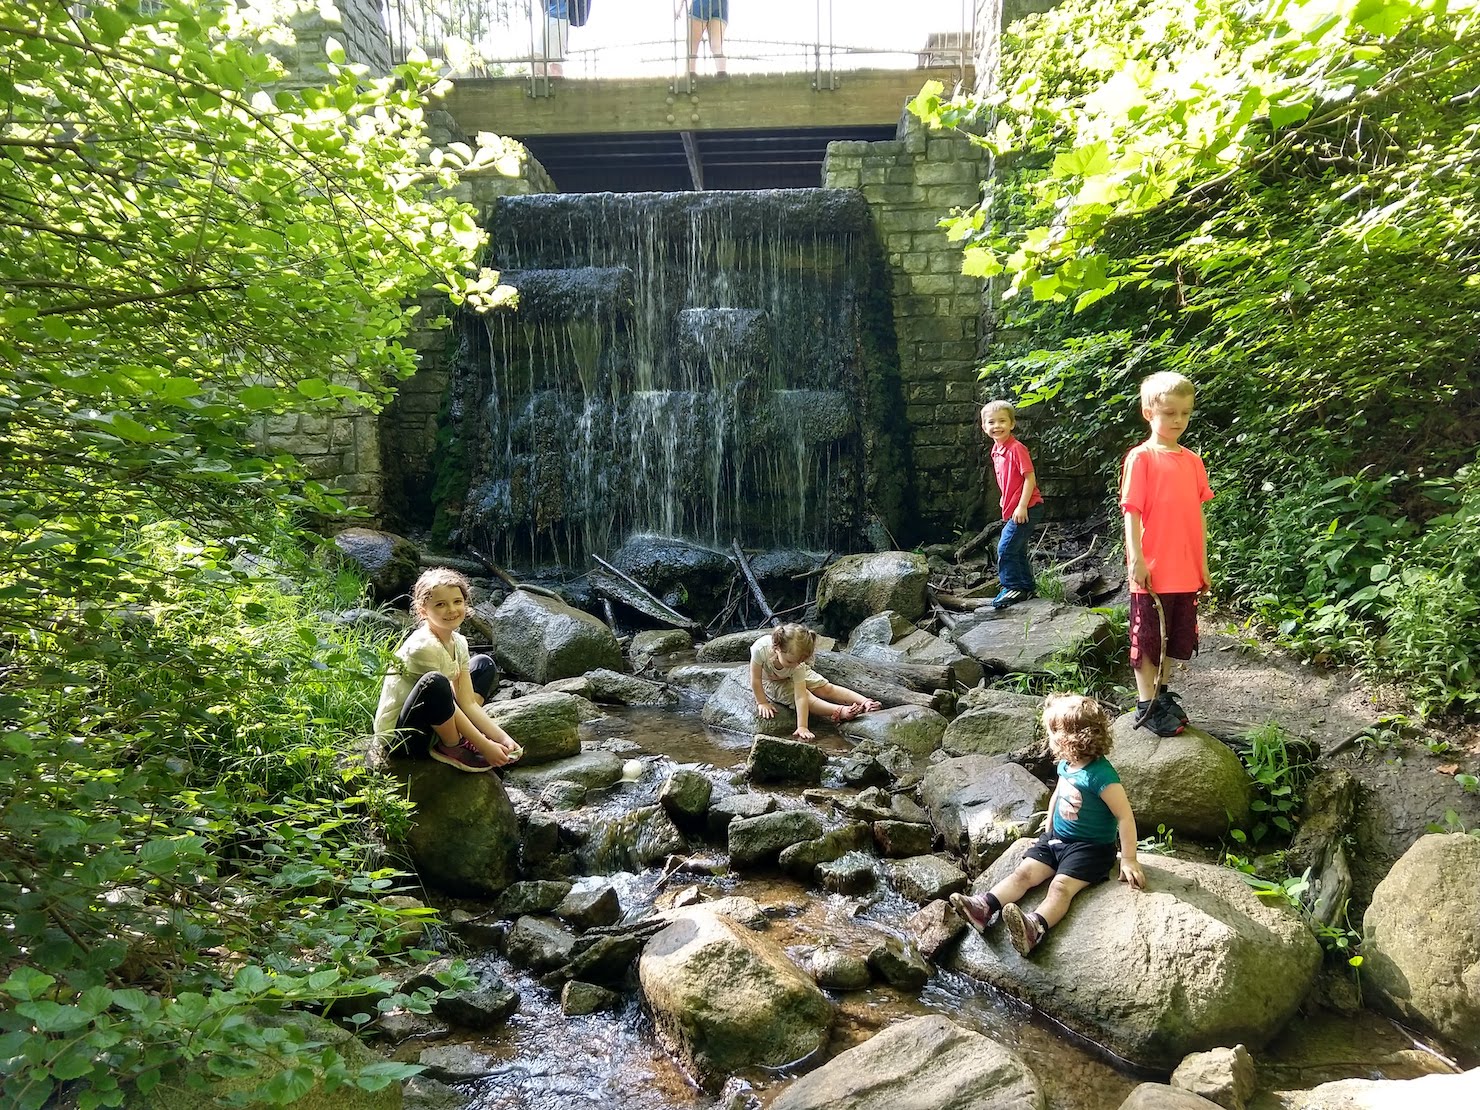 children sitting on rocks in a stream